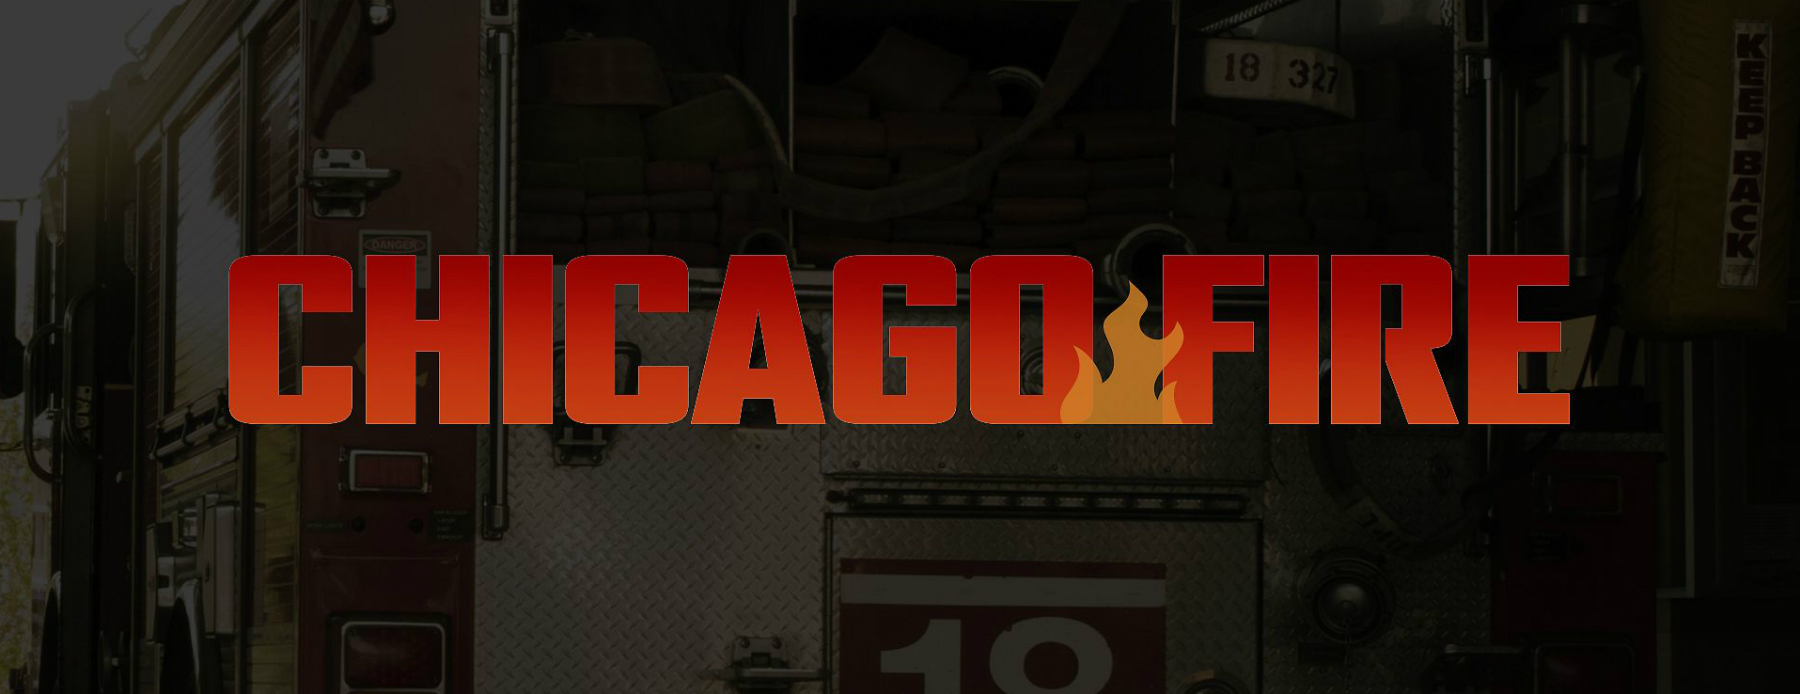 Chicago Fire saison 2 : le feu dans la caserne